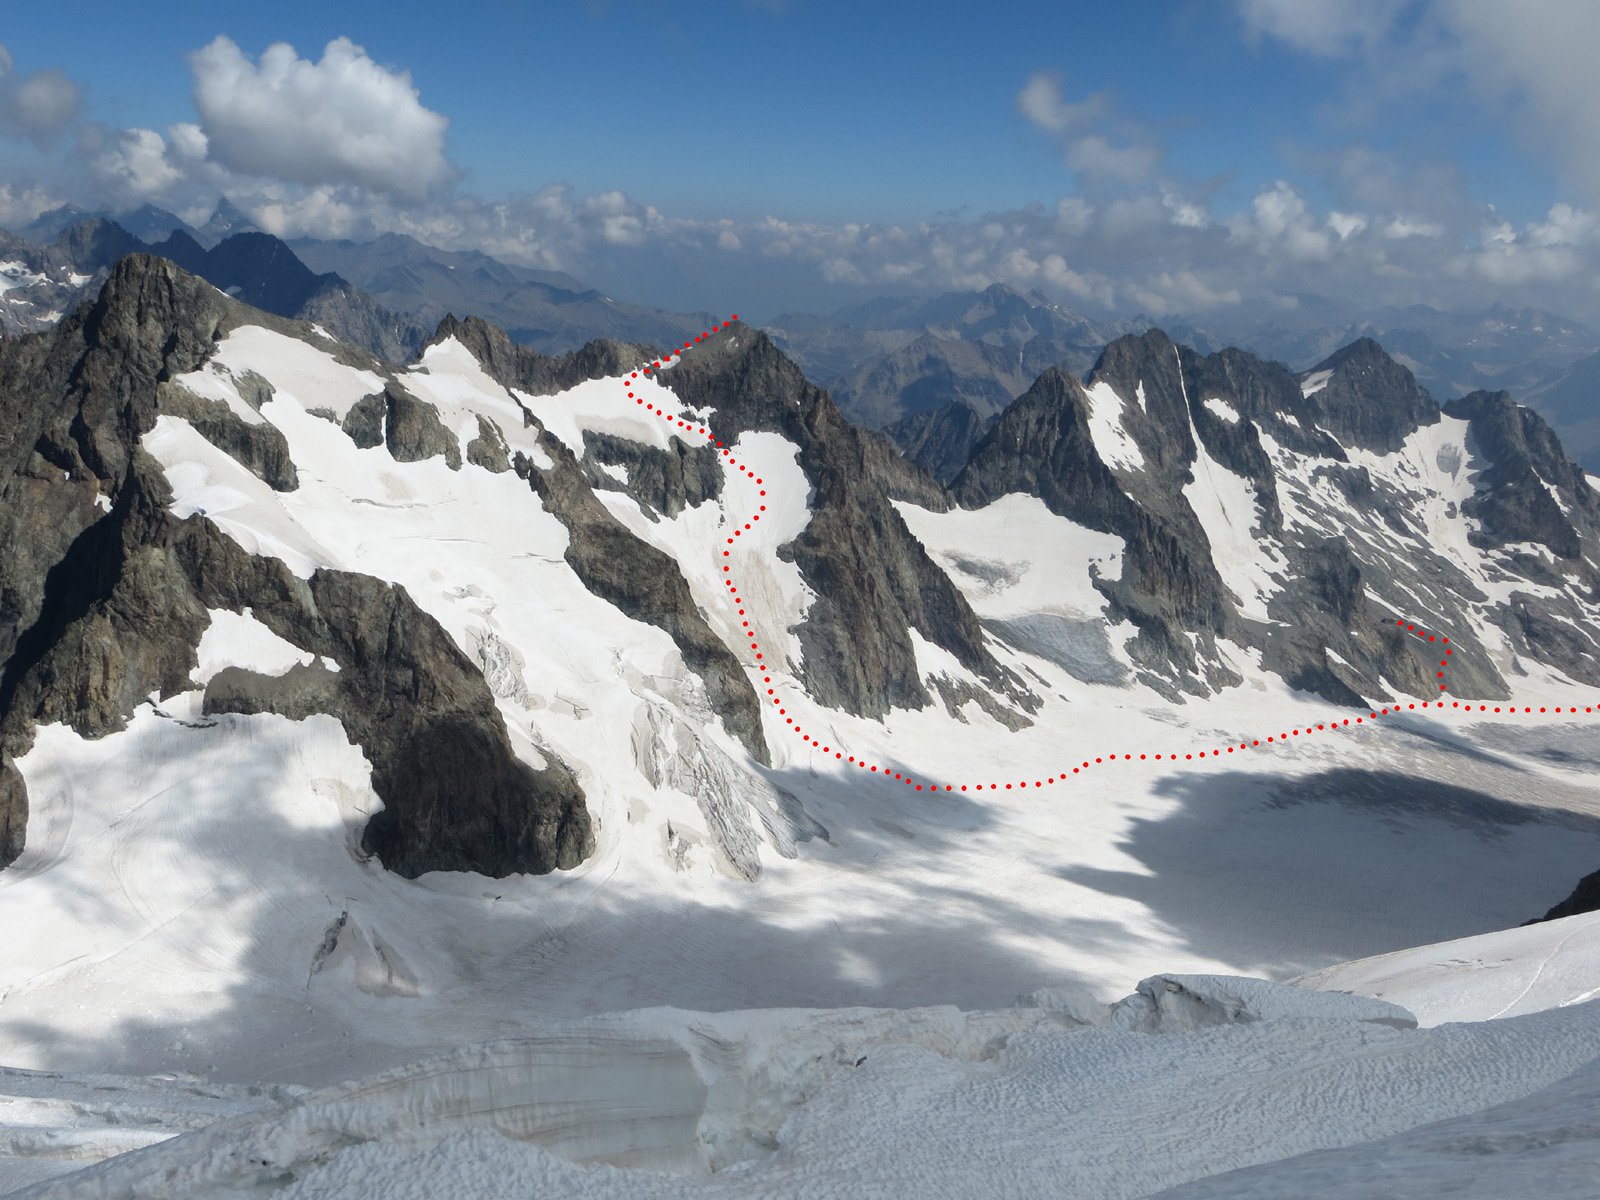 il percorso di salita visto salendo al dome de neige (a dx la traccia per il rifugio des ecrins).